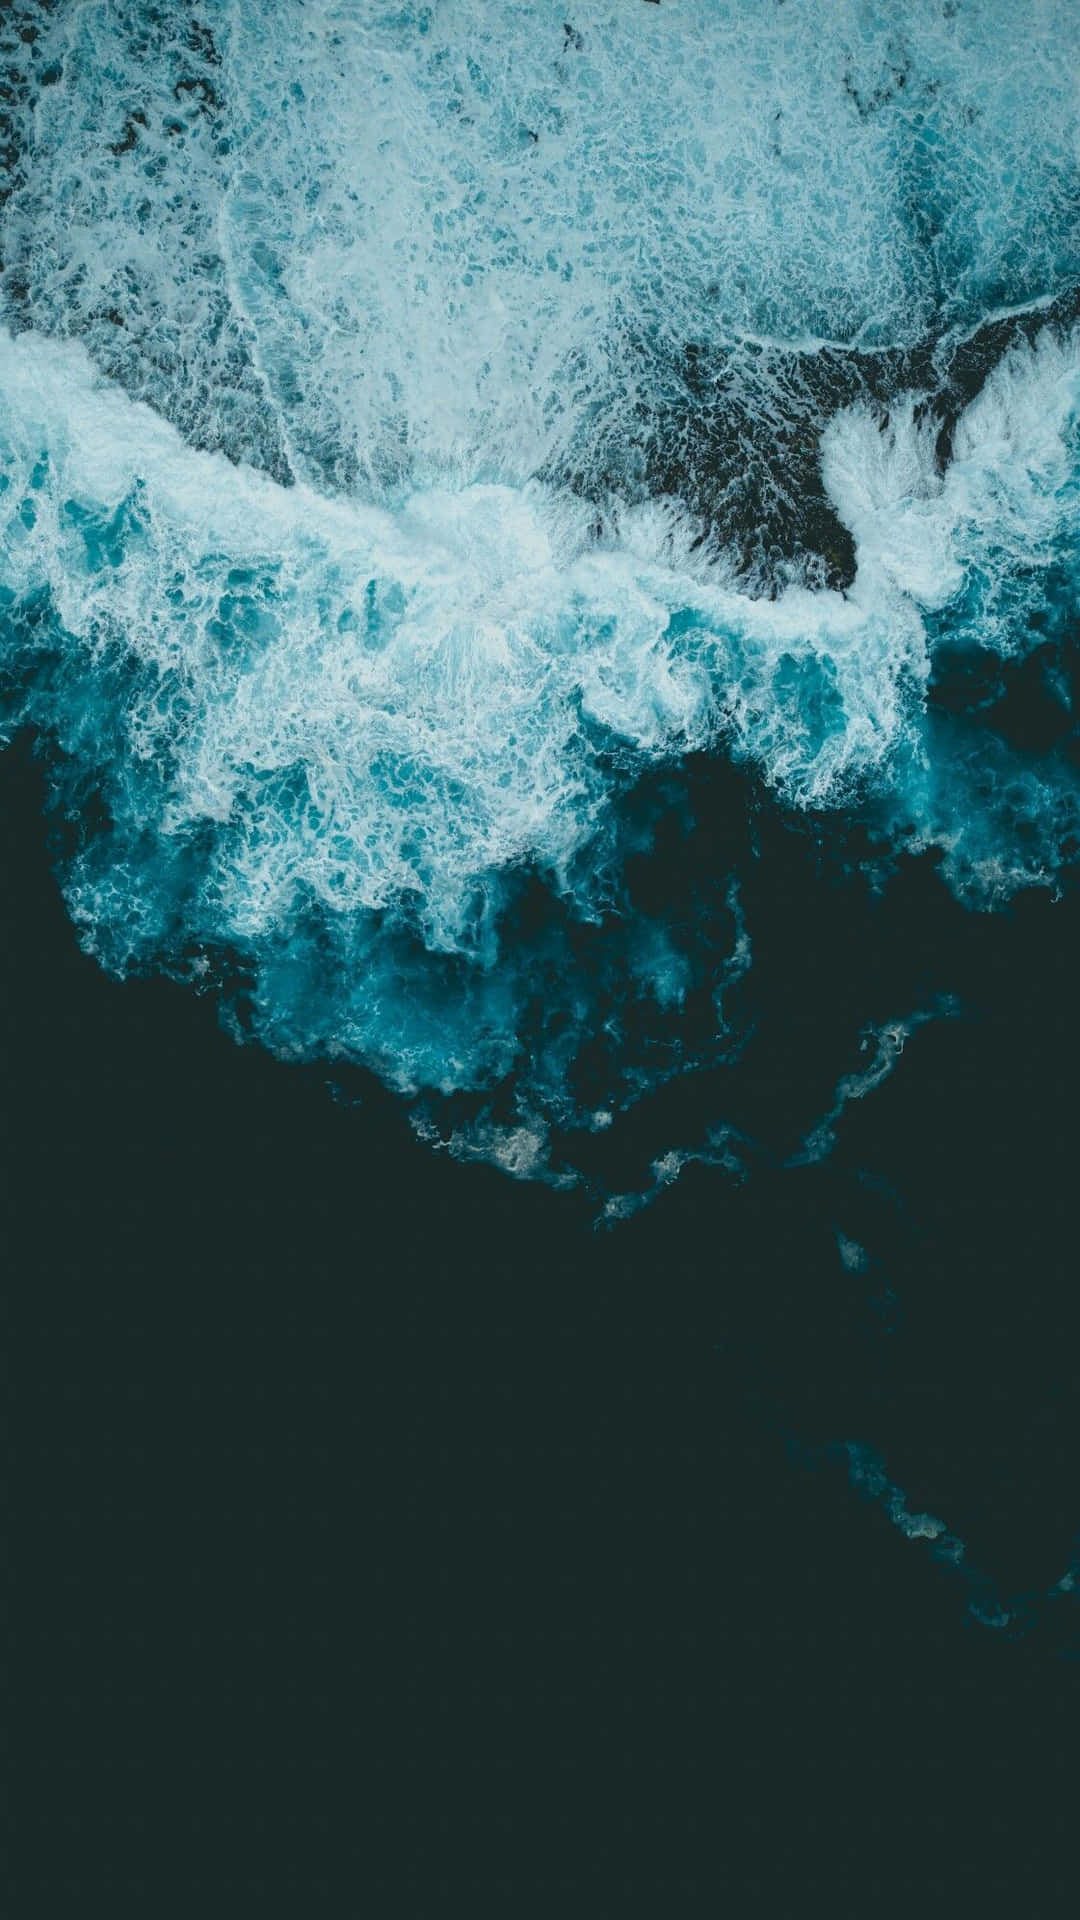 Google Pixel Vand Mørkeblå Bølger Wallpaper